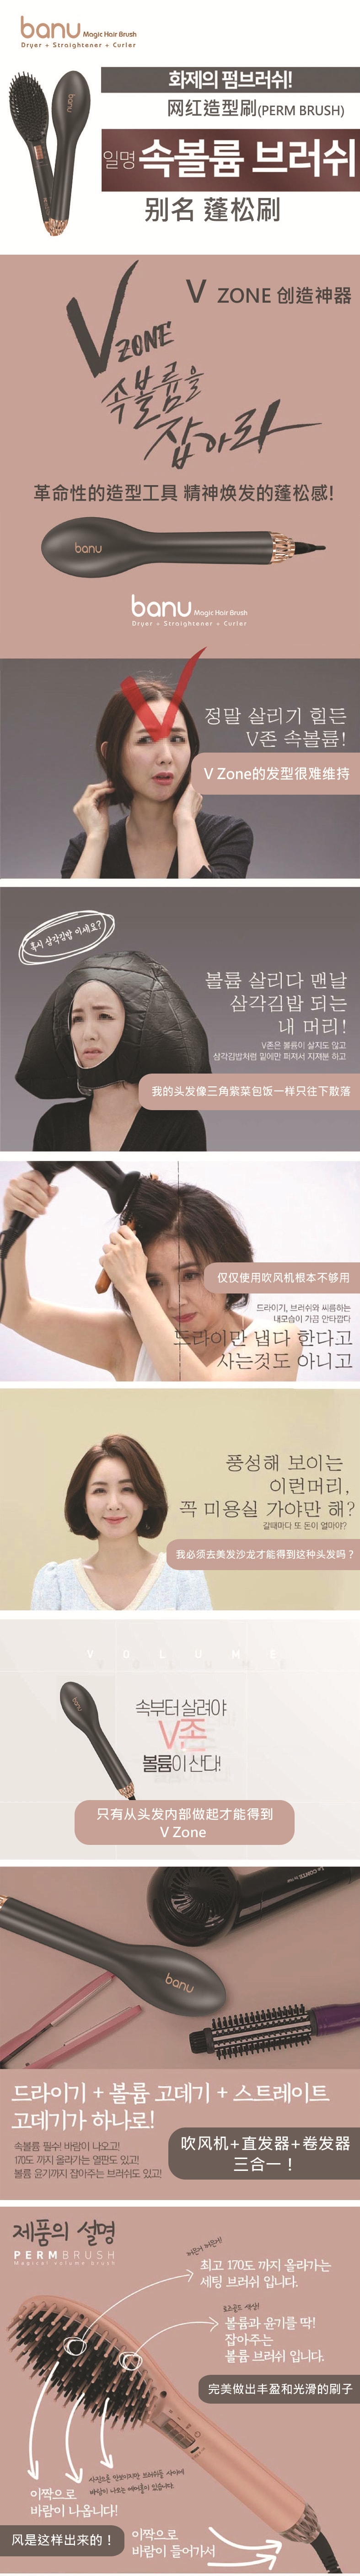 韩国 BANU 网红产品 5倍蓬松丰盈造型梳 卷发+直发+吹风 3合一 黑色 1 件